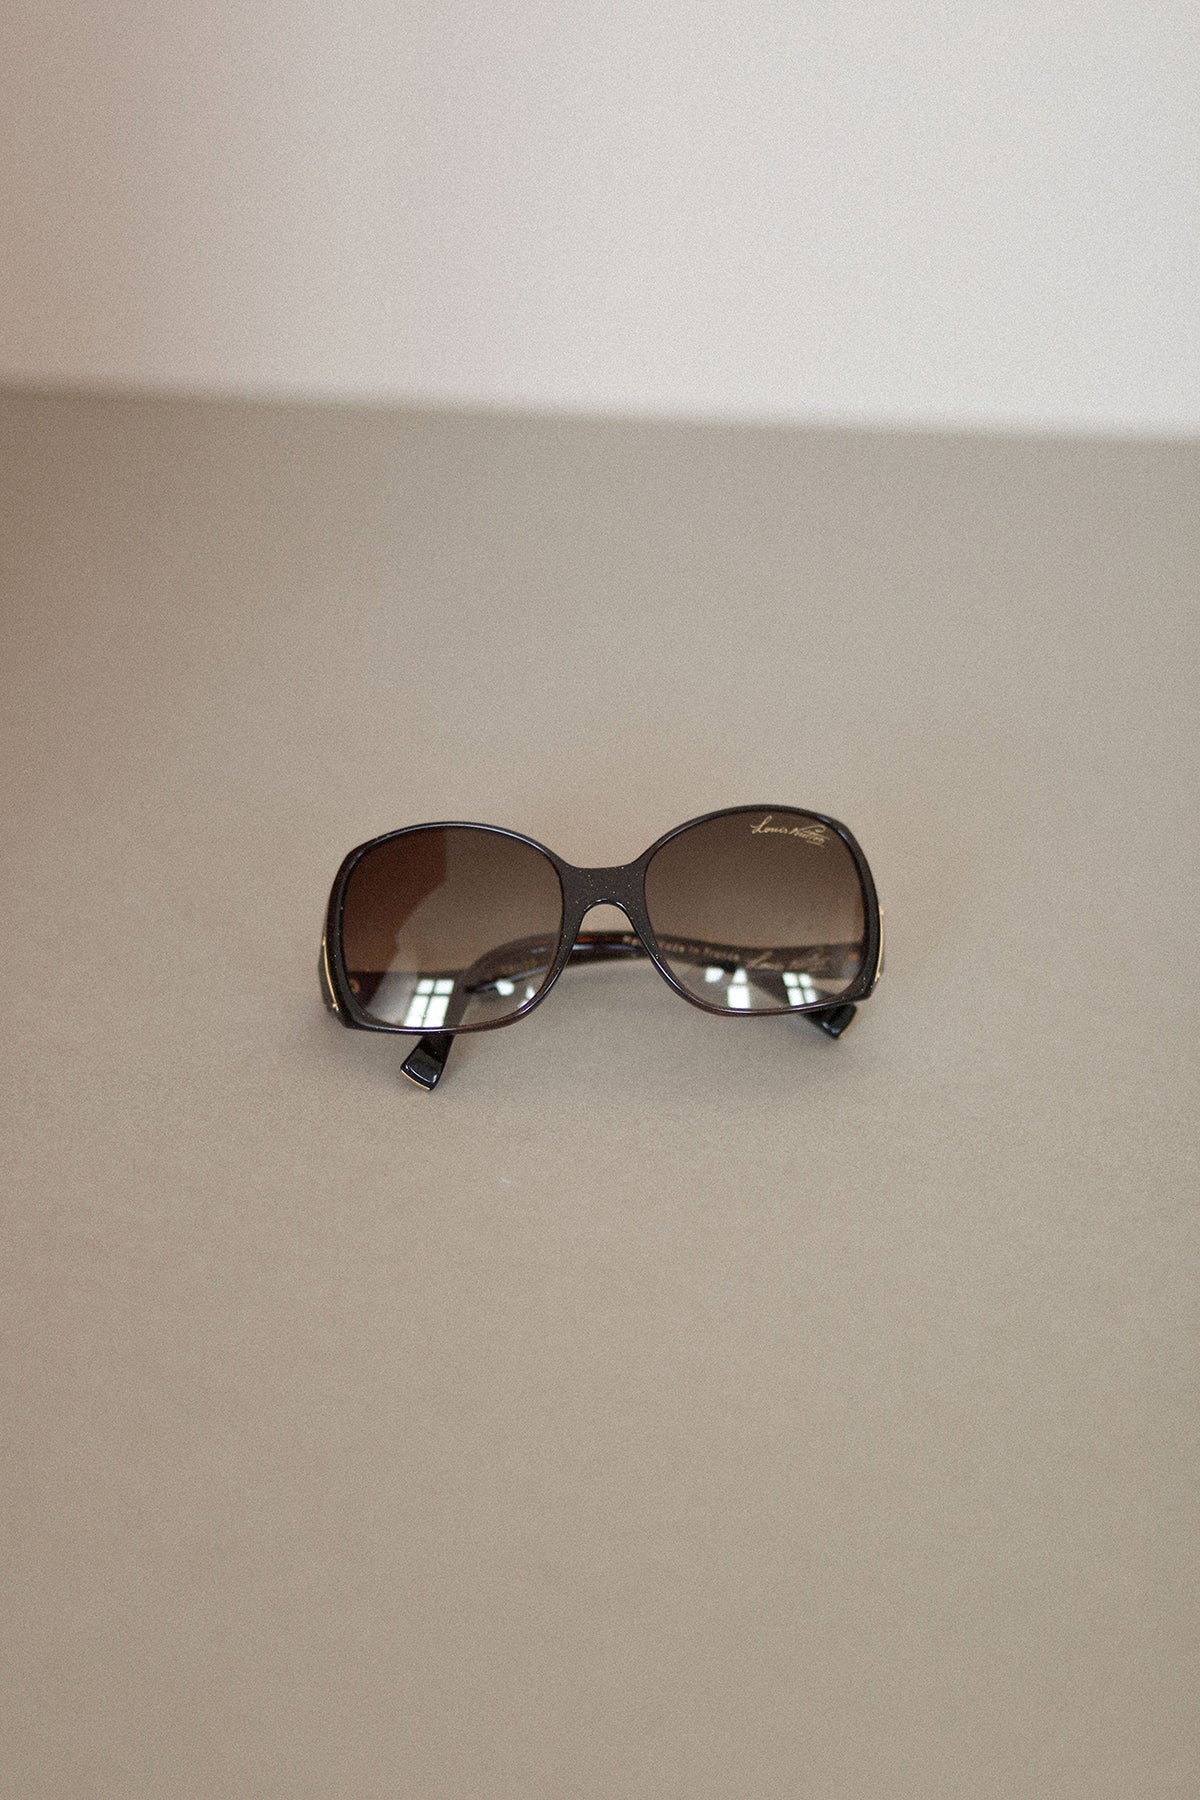 vintage louis vuitton sunglasses